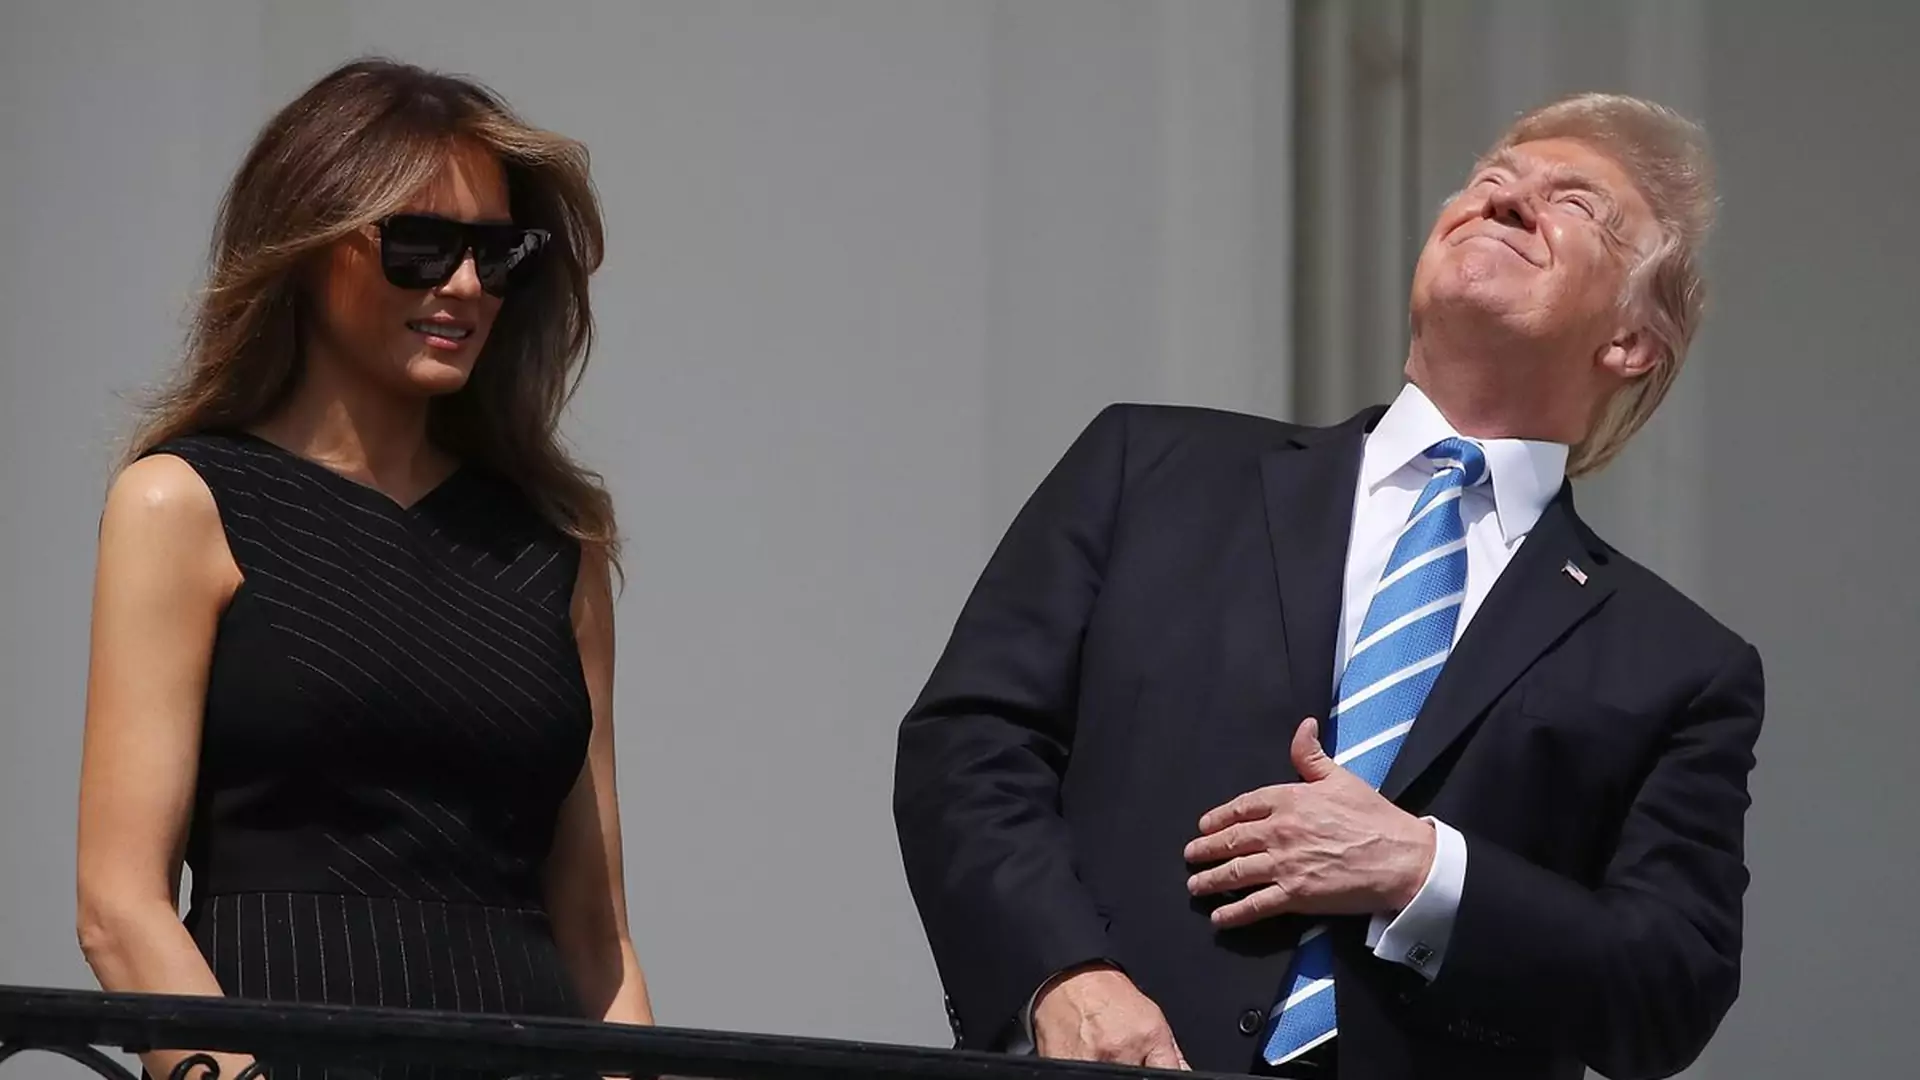 Z zaćmieniem Słońca nie wygrasz, nawet kiedy jesteś prezydentem USA. Co głupiego zrobił Trump?